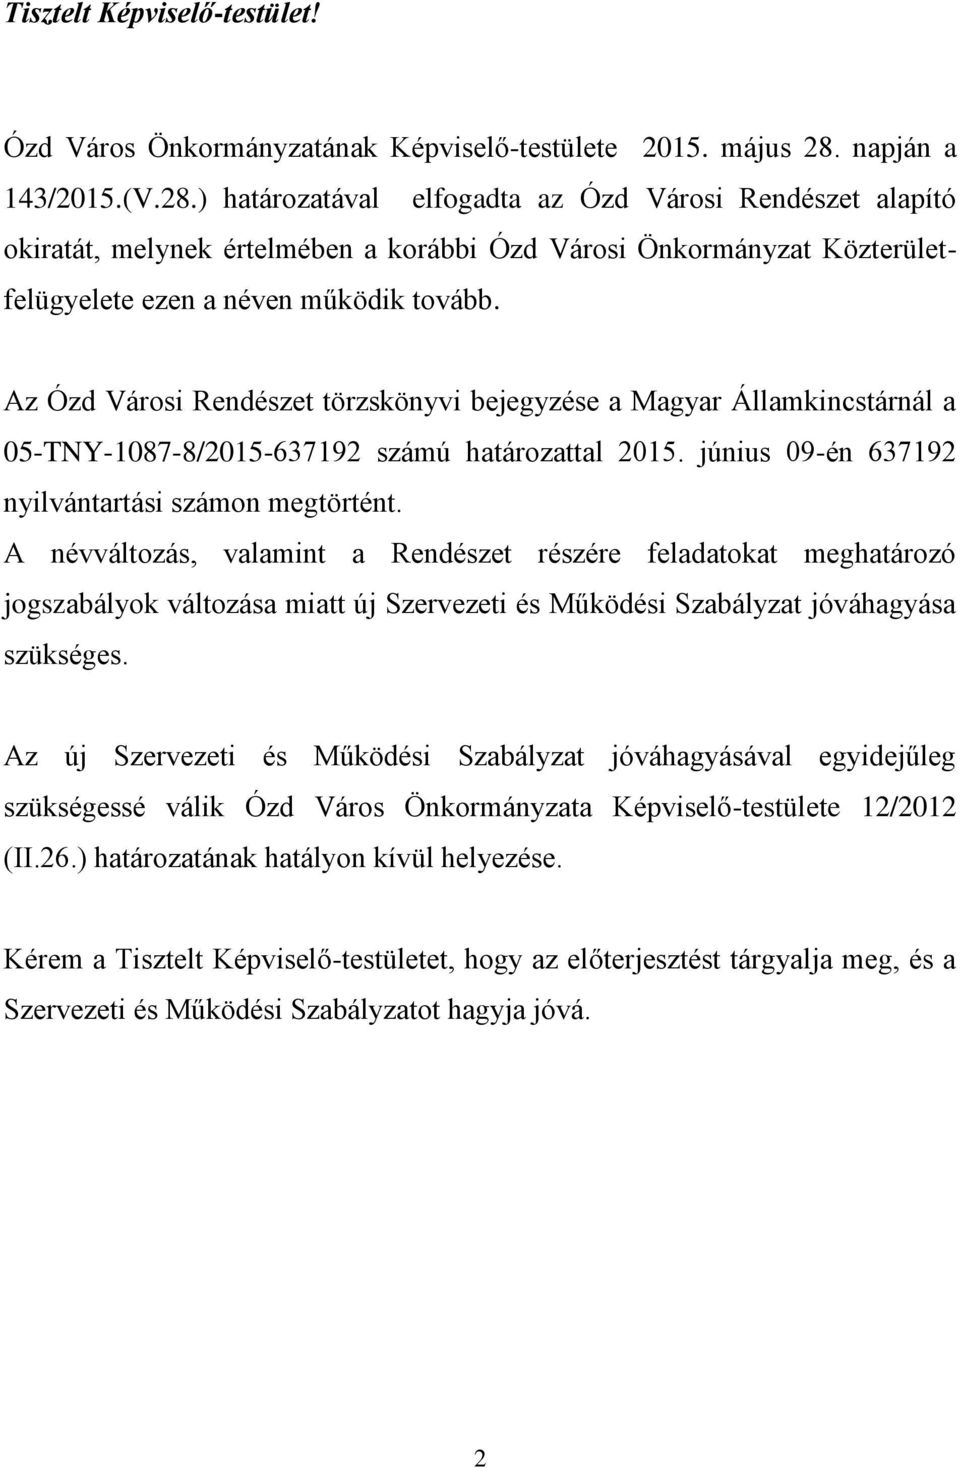 Az Ózd Városi Rendészet törzskönyvi bejegyzése a Magyar Államkincstárnál a 05-TNY-1087-8/2015-637192 számú határozattal 2015. június 09-én 637192 nyilvántartási számon megtörtént.